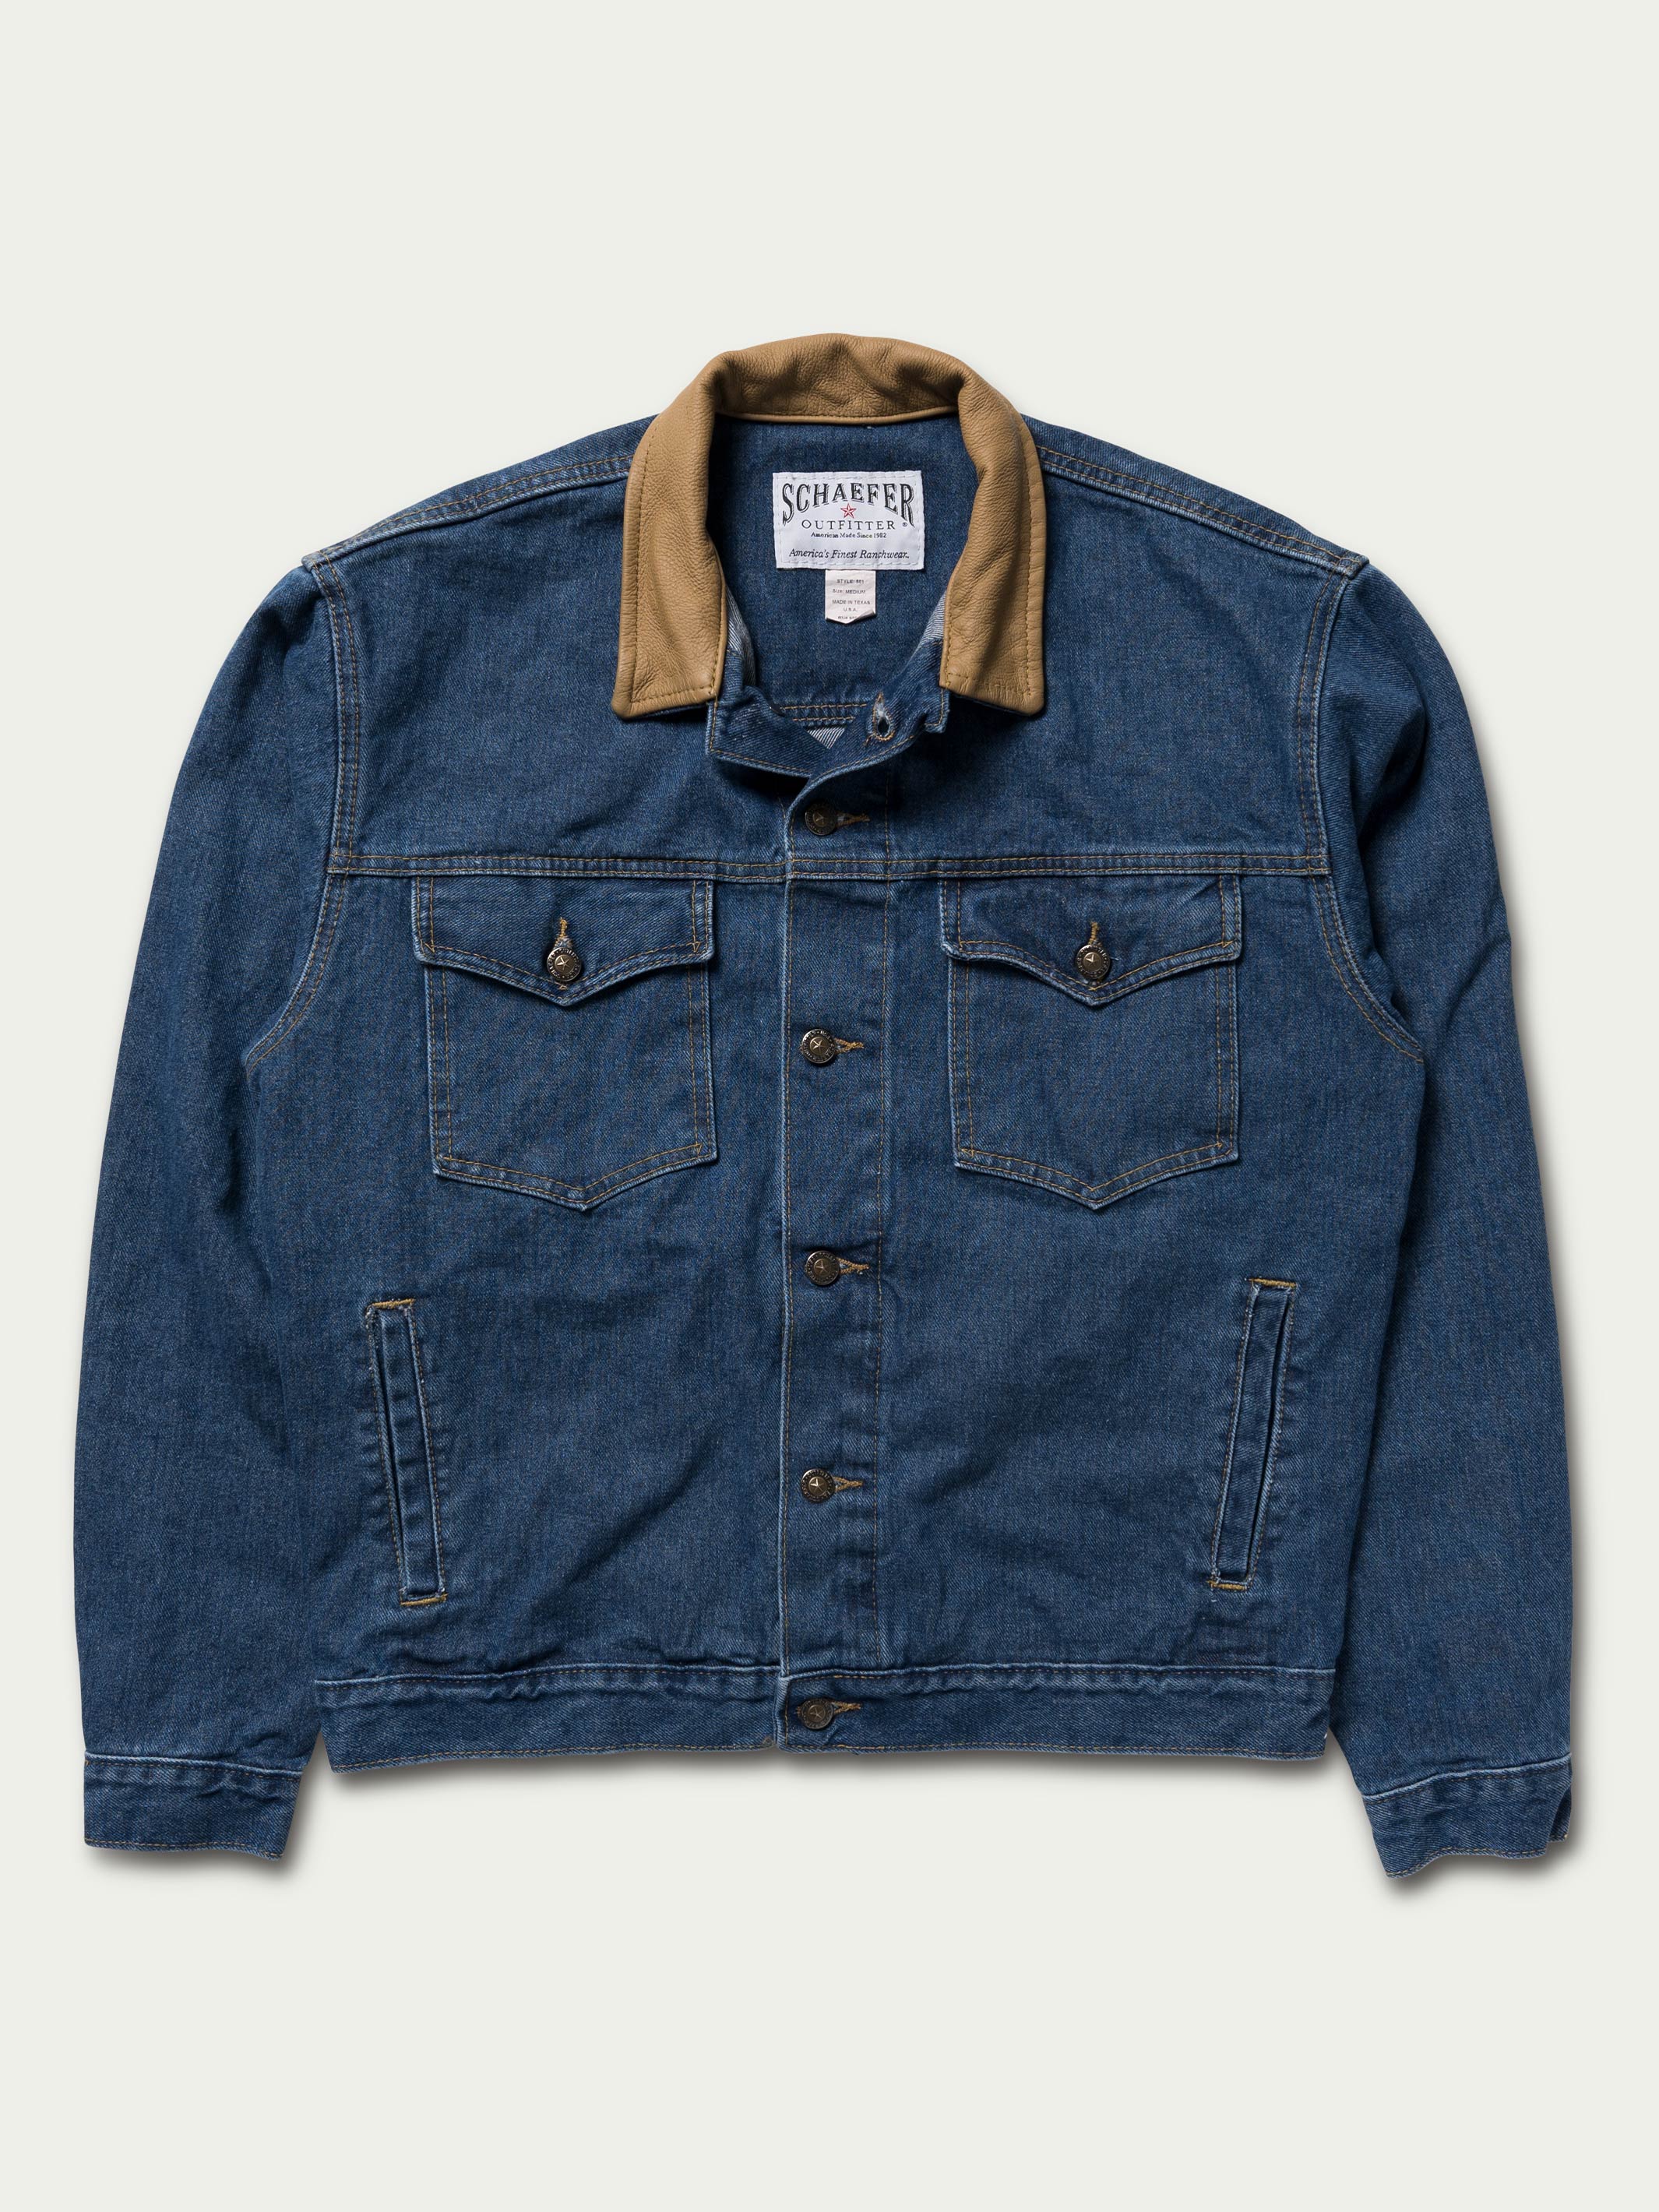 Legend Denim Jacket with Fleece Lining | Schaefer Outfitter